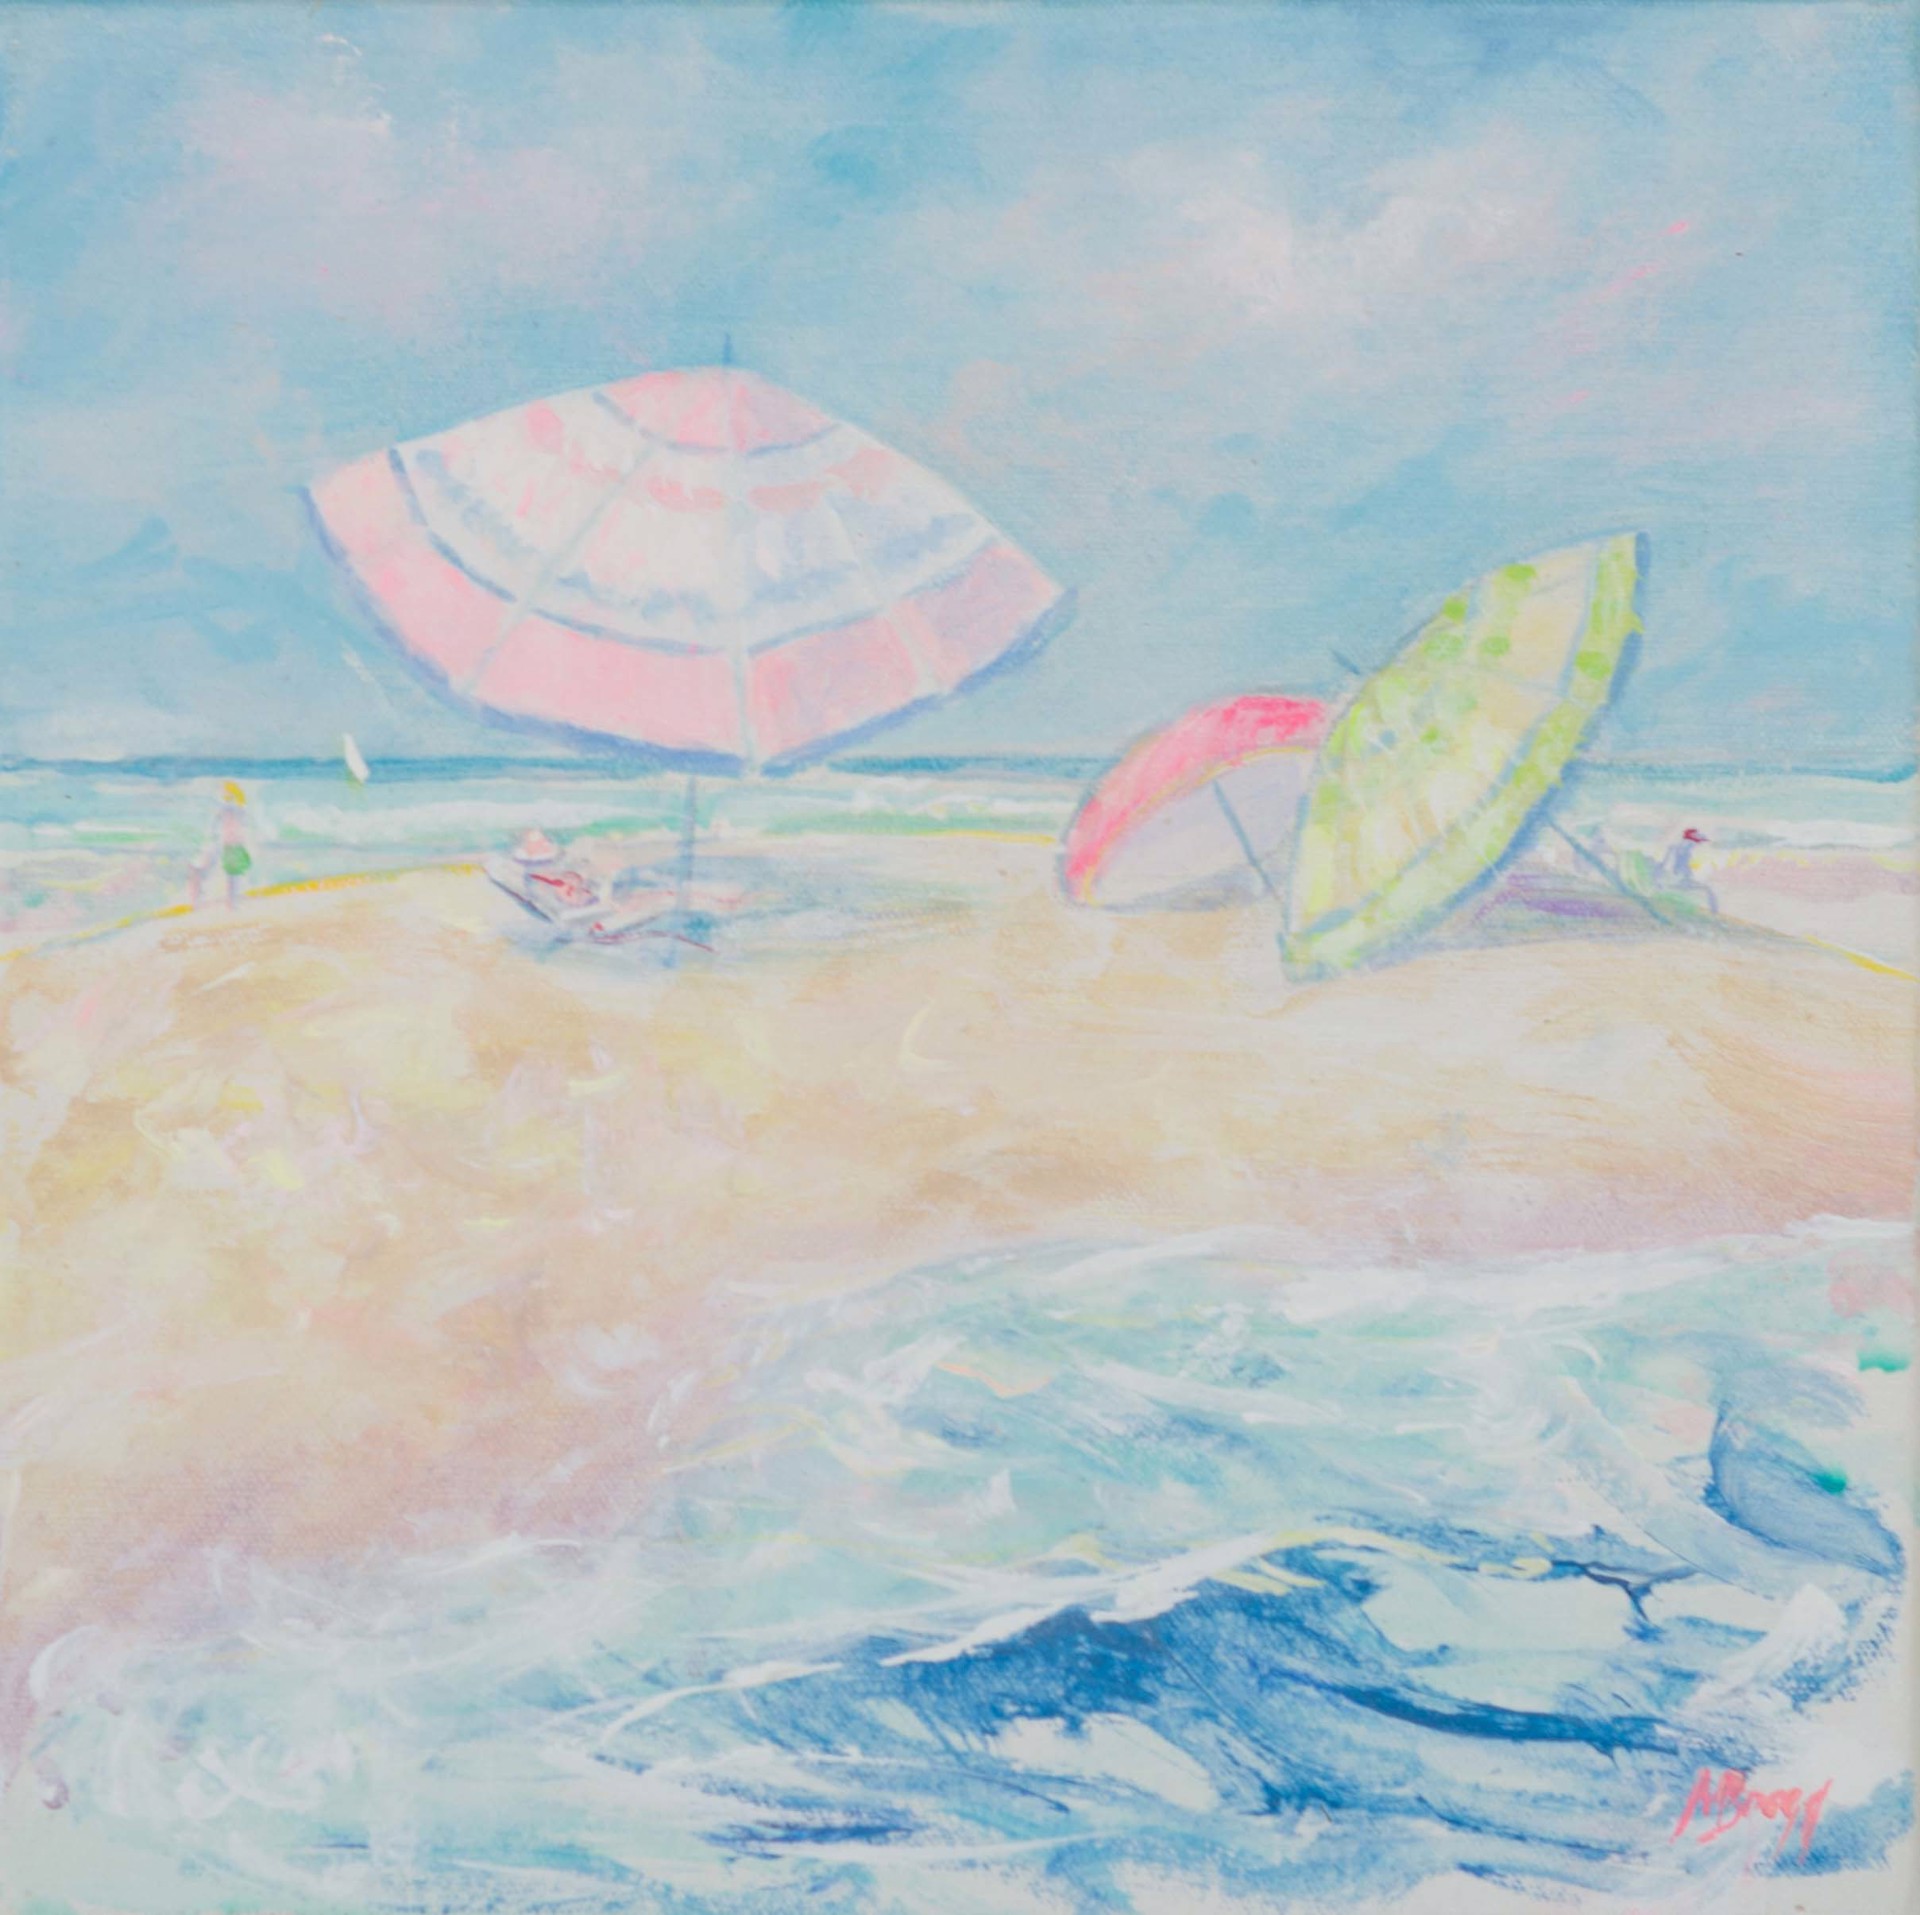 Beach Umbrellas III by Margaret Bragg